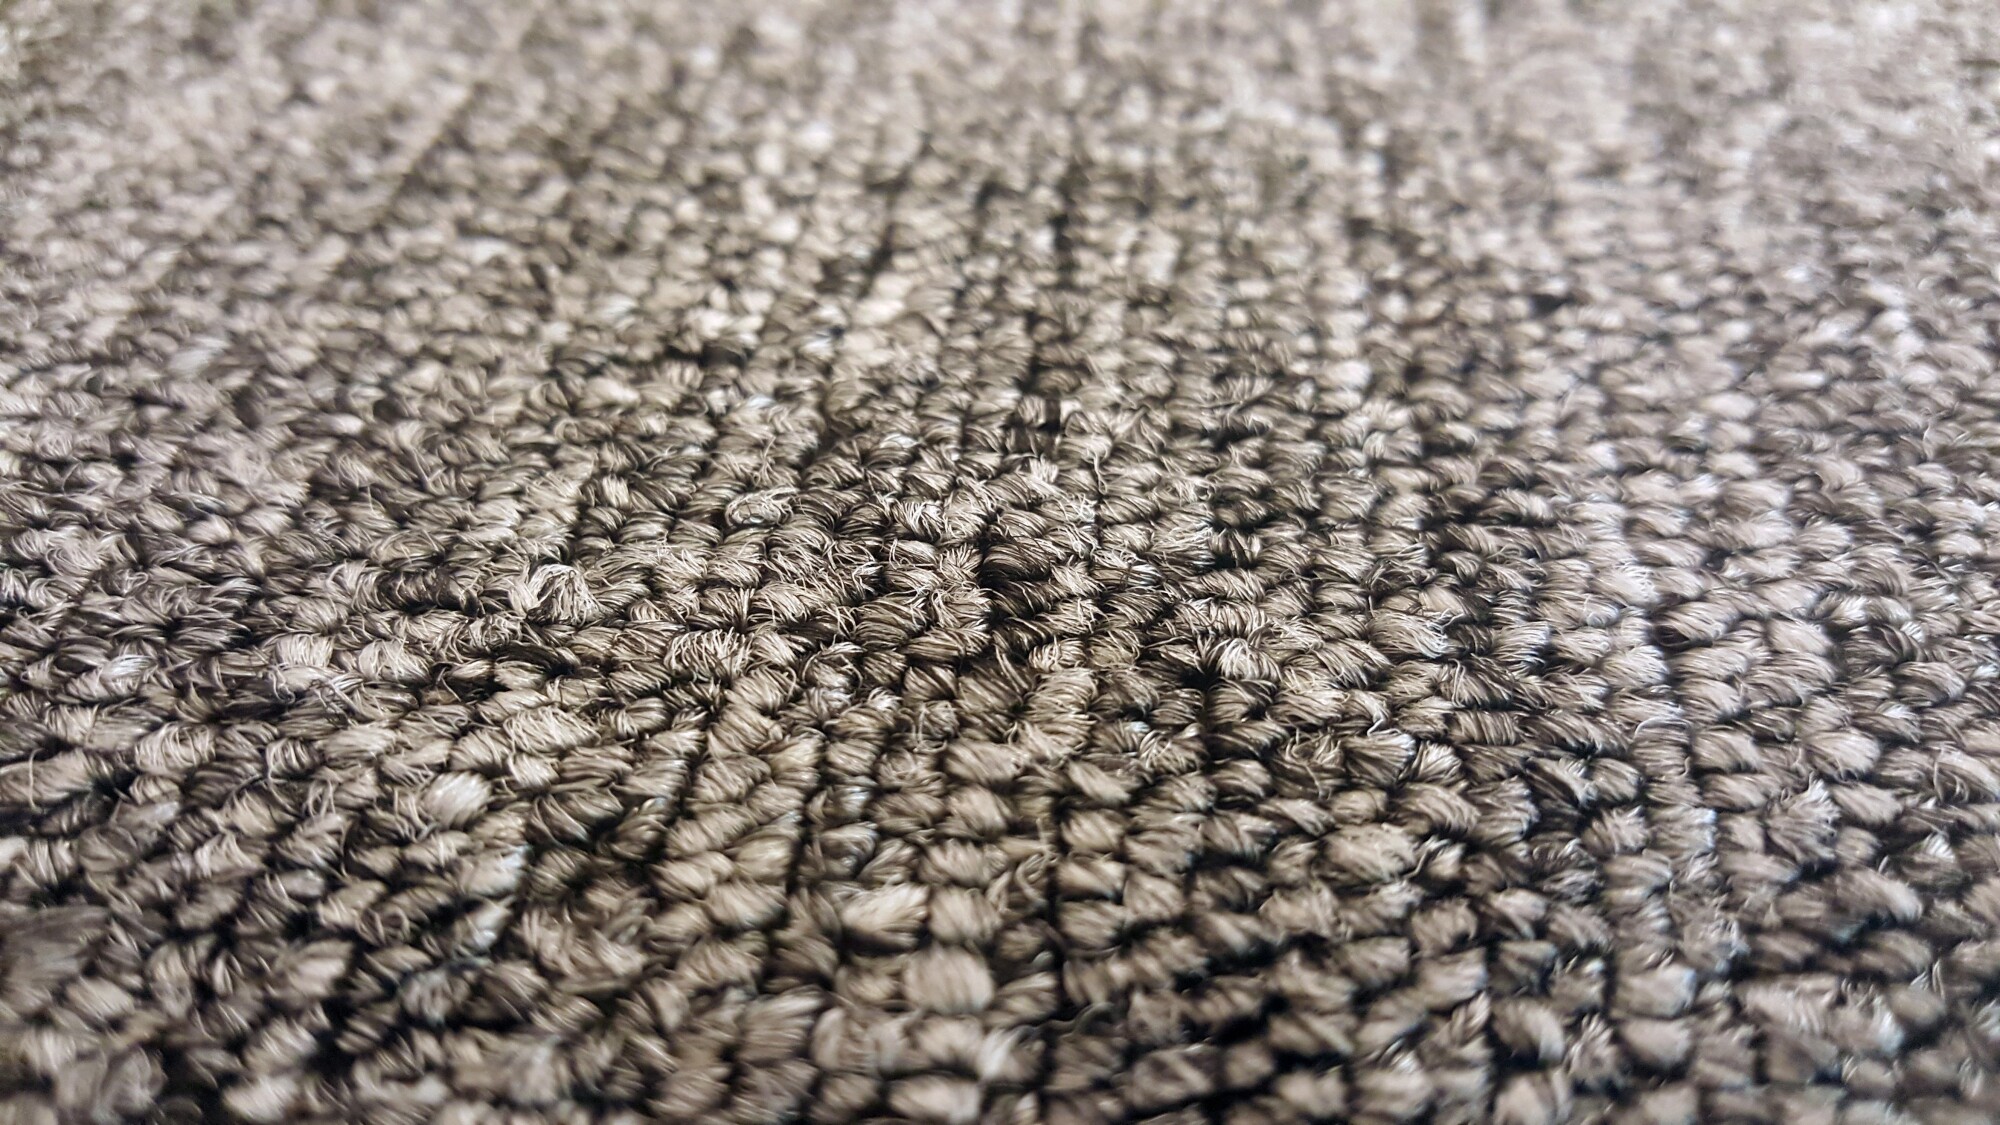 carpet colors